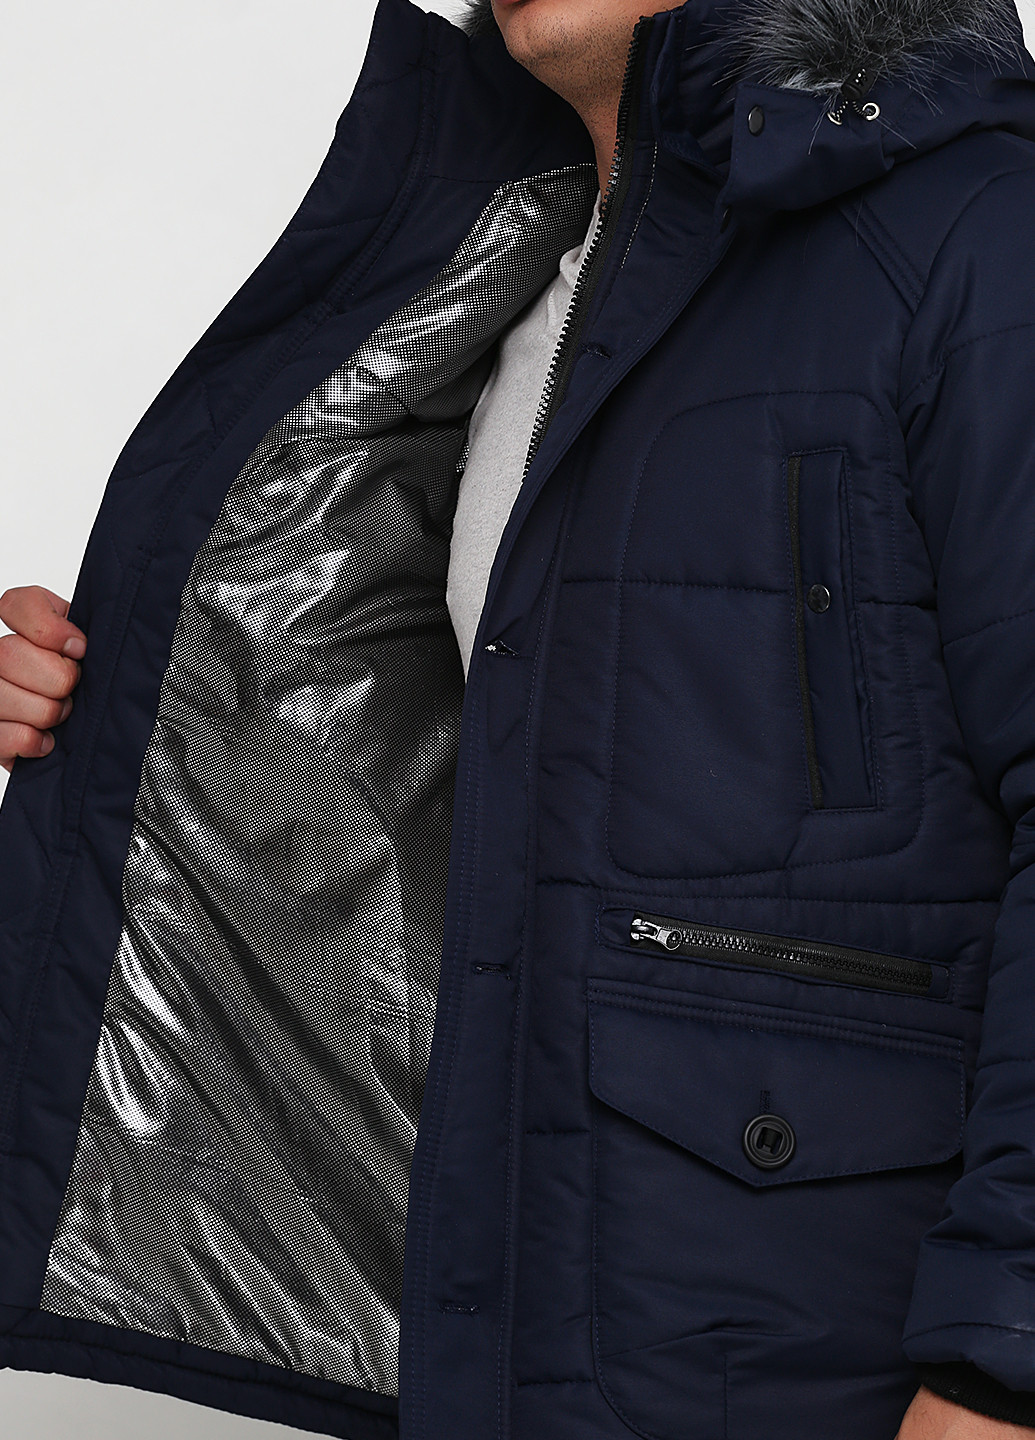 Темно-синяя зимняя куртка Bondi